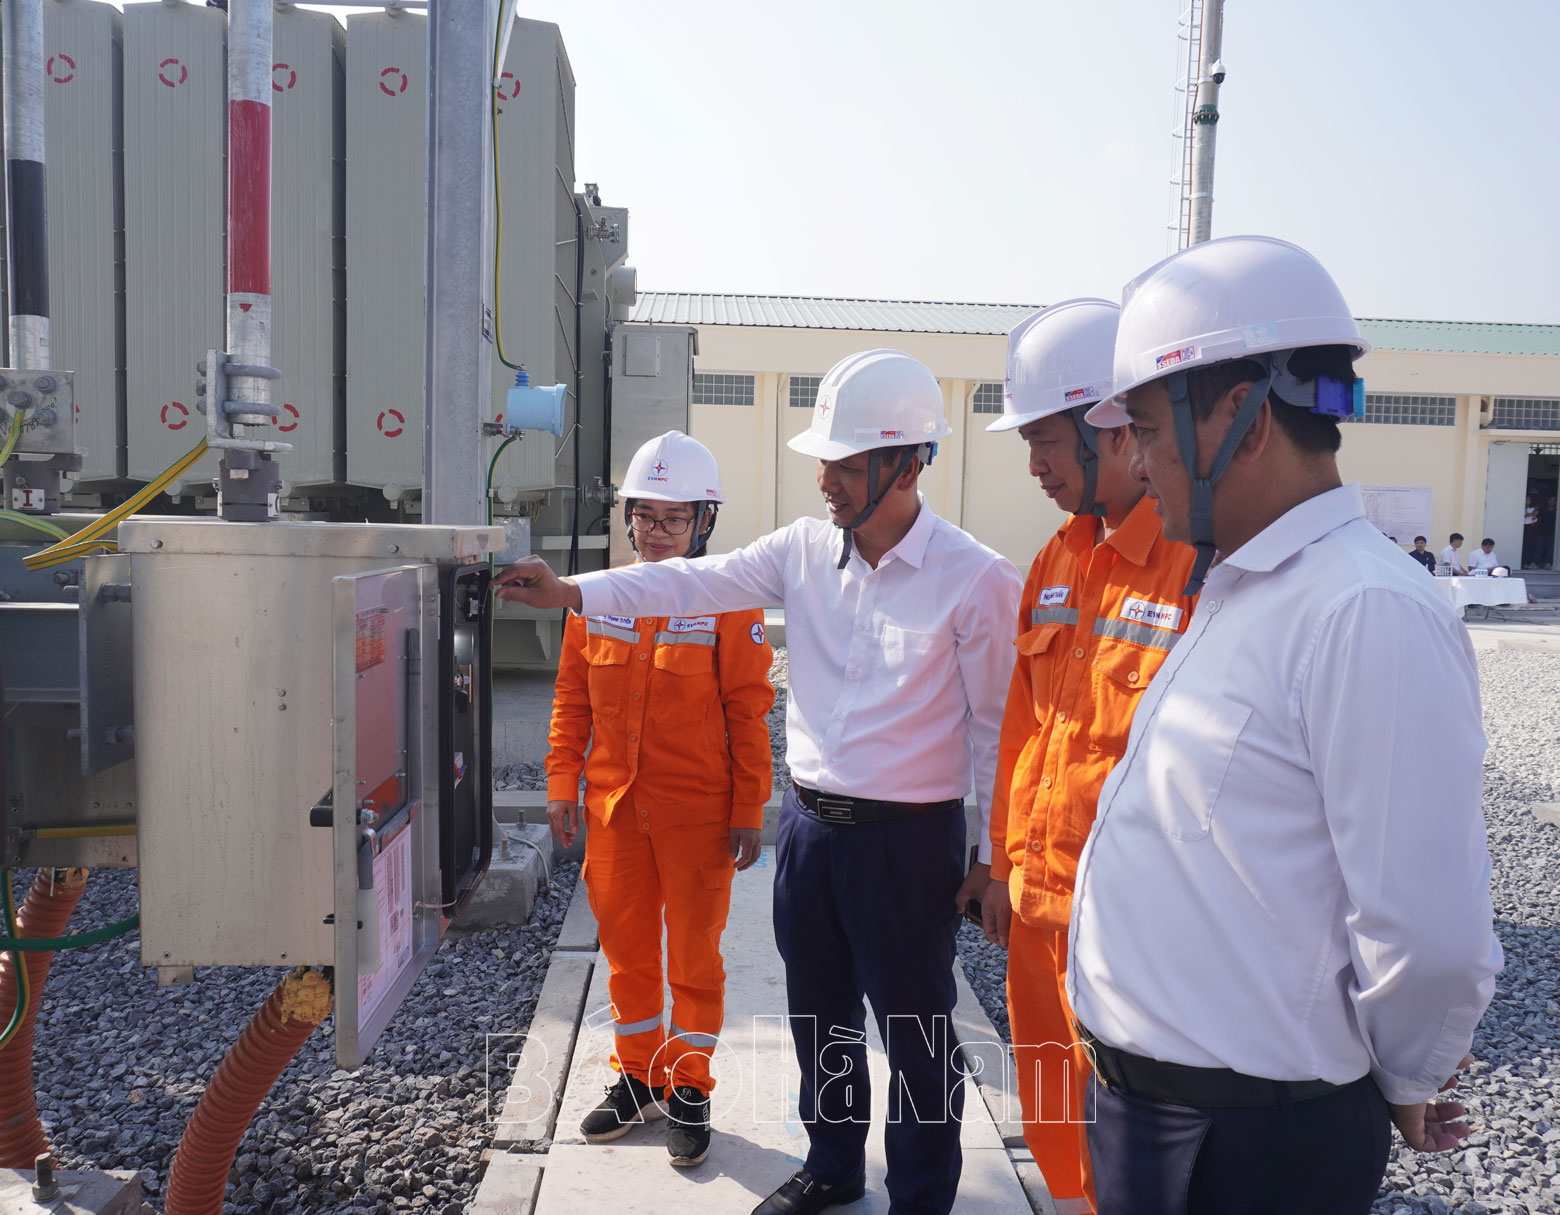 Công ty Điện lực Hà Nam tổ chức đóng điện TBA 110 kV Nhân Mỹ 